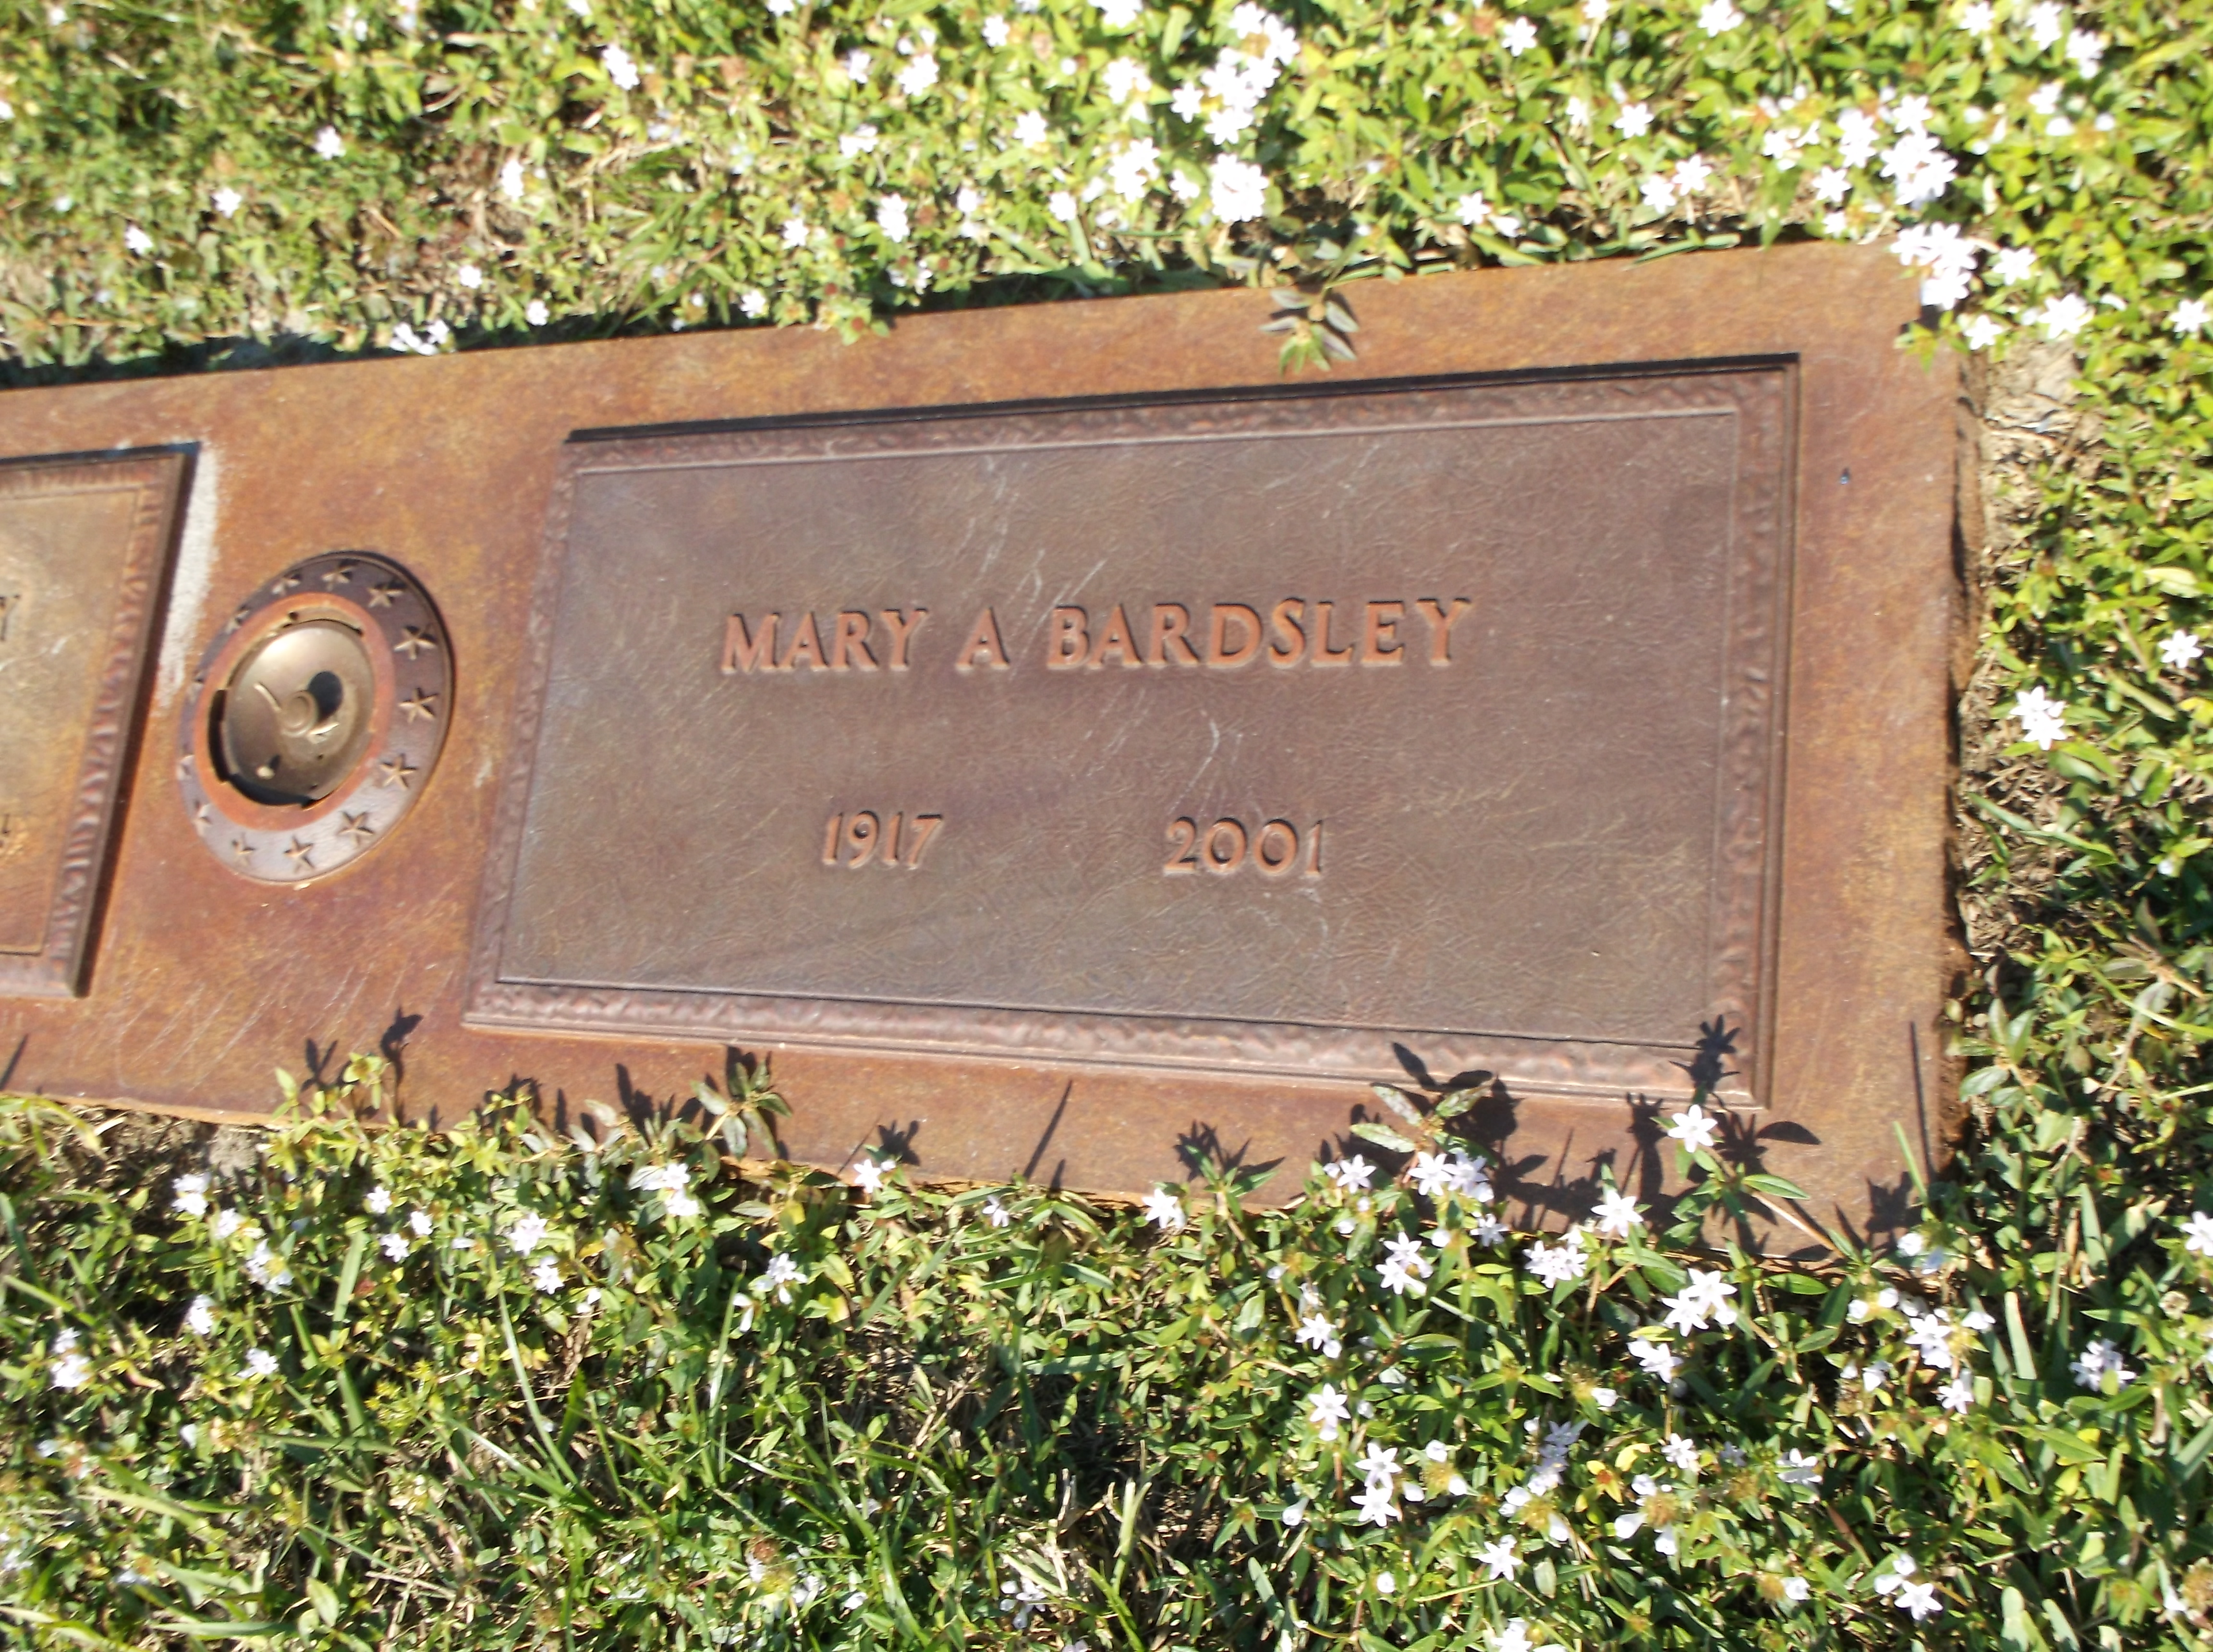 Mary A Bardsley